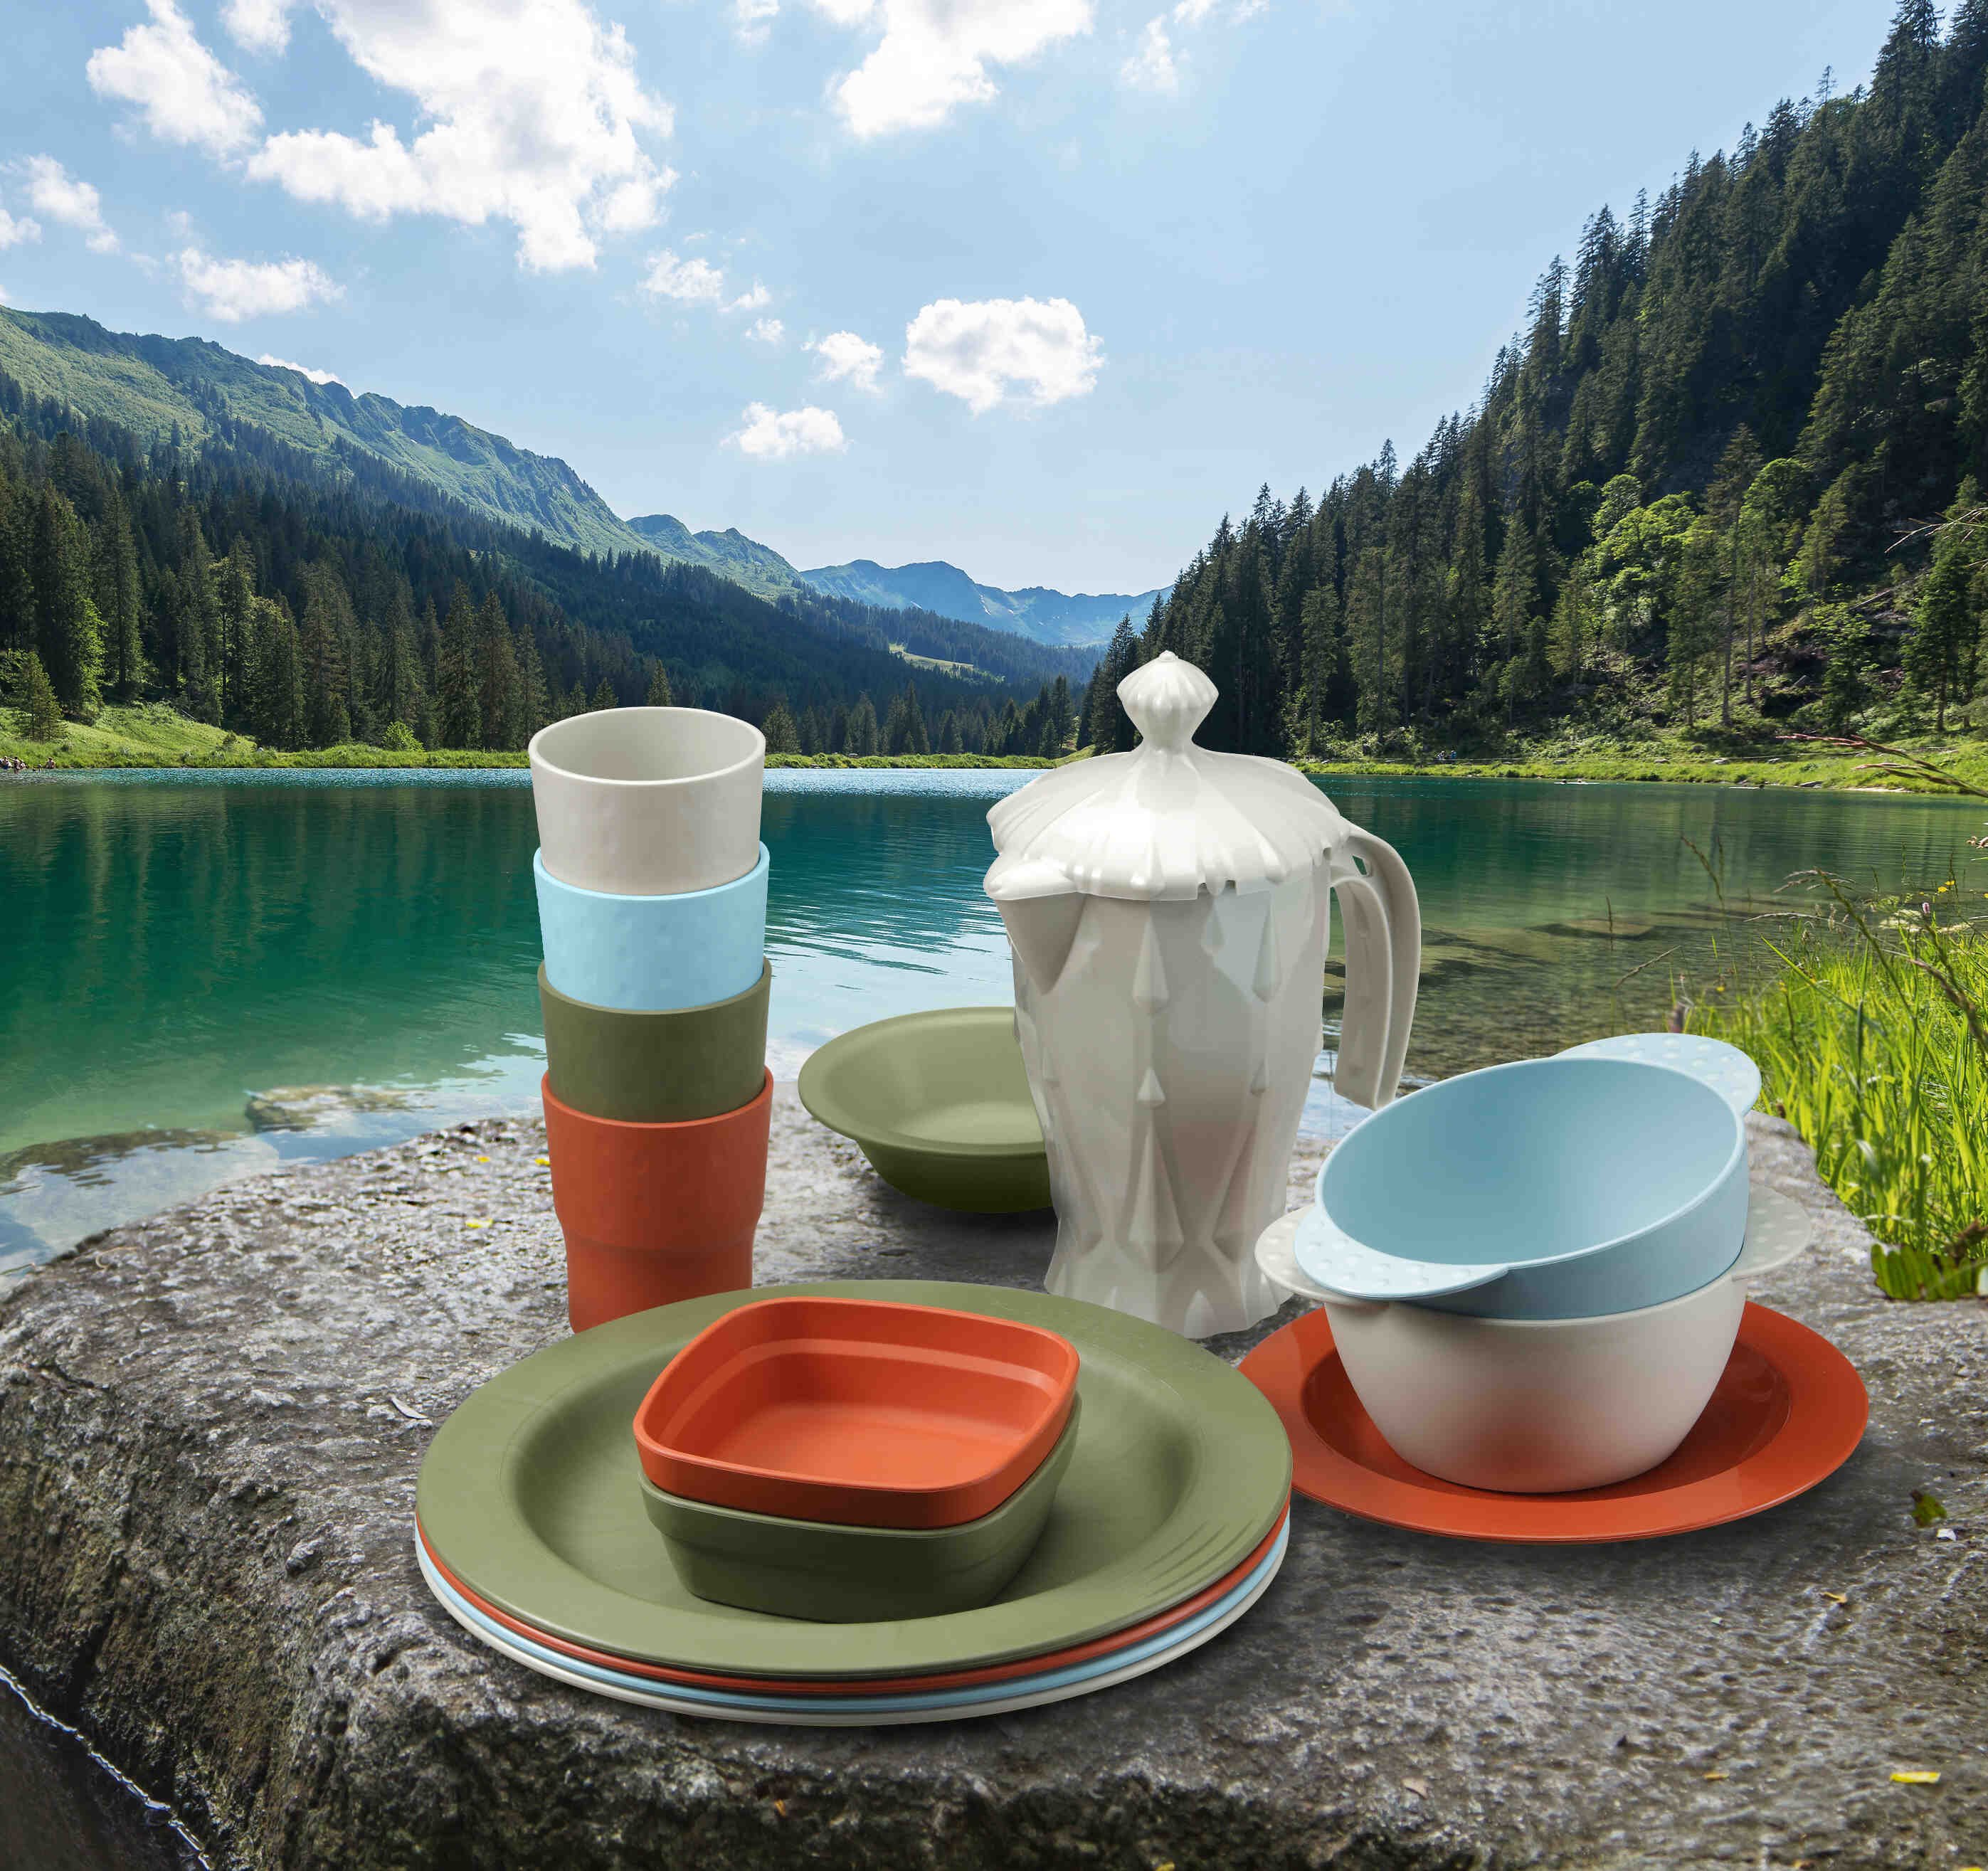 Vaisselle (assiettes, bols, gobelets...) de couleurs verte, orange et bleue de la marque Saint-Romain.